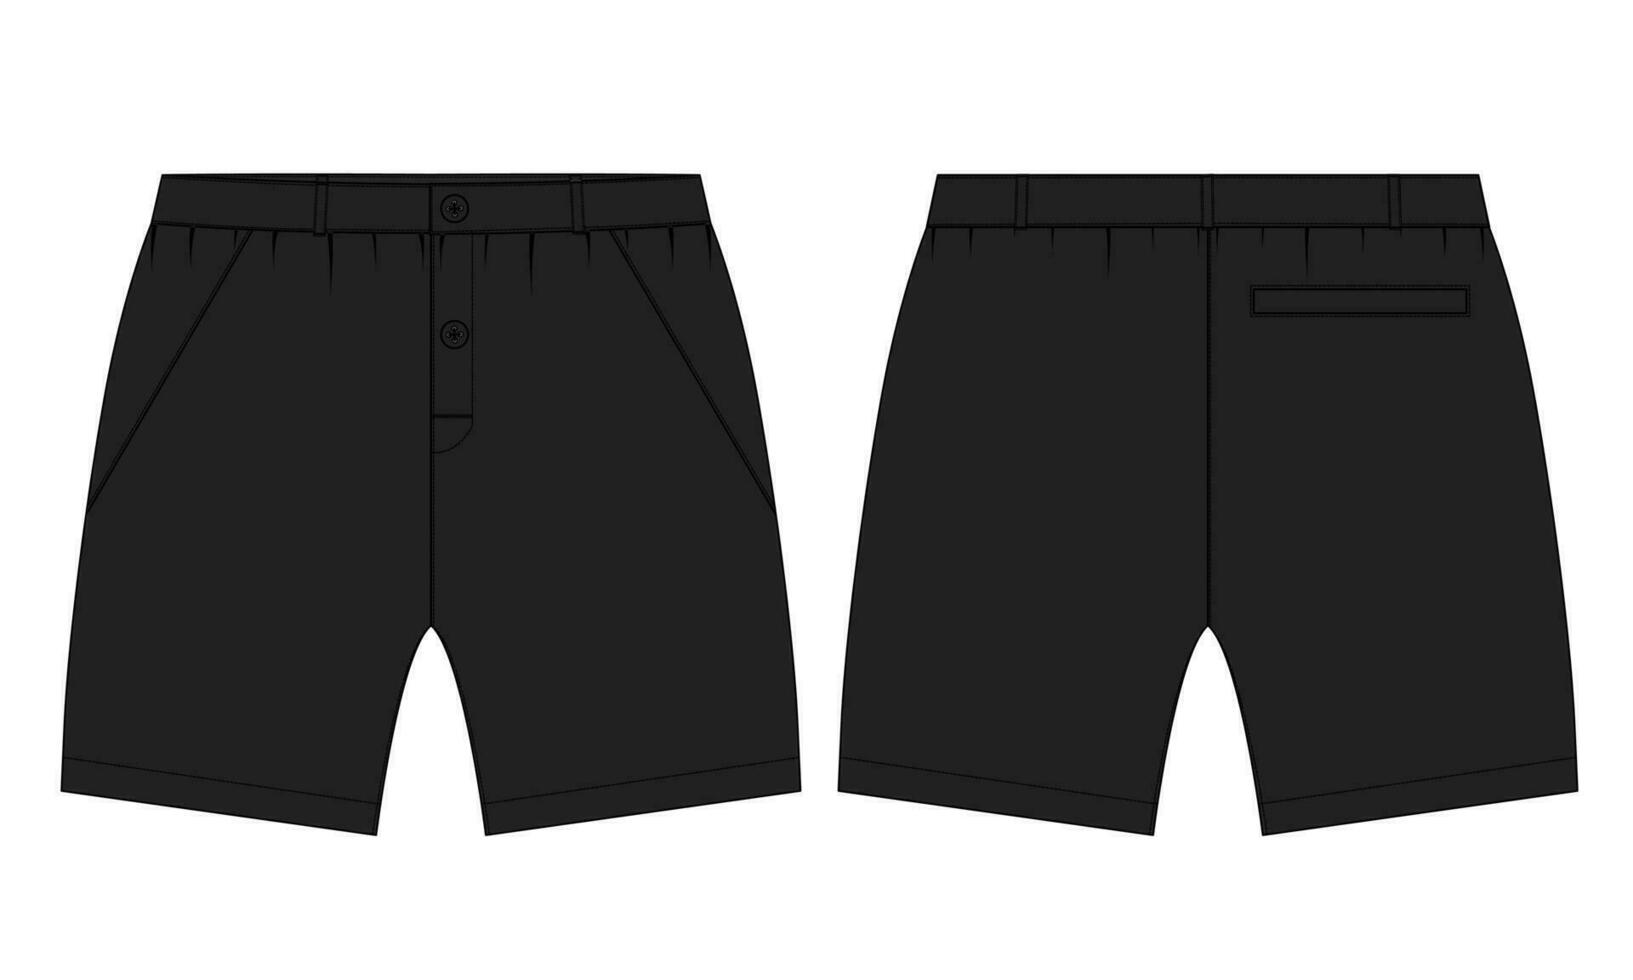 Pojkar svettas shorts flämta teknisk mode platt skiss vektor illustration svart Färg mall för ung män.